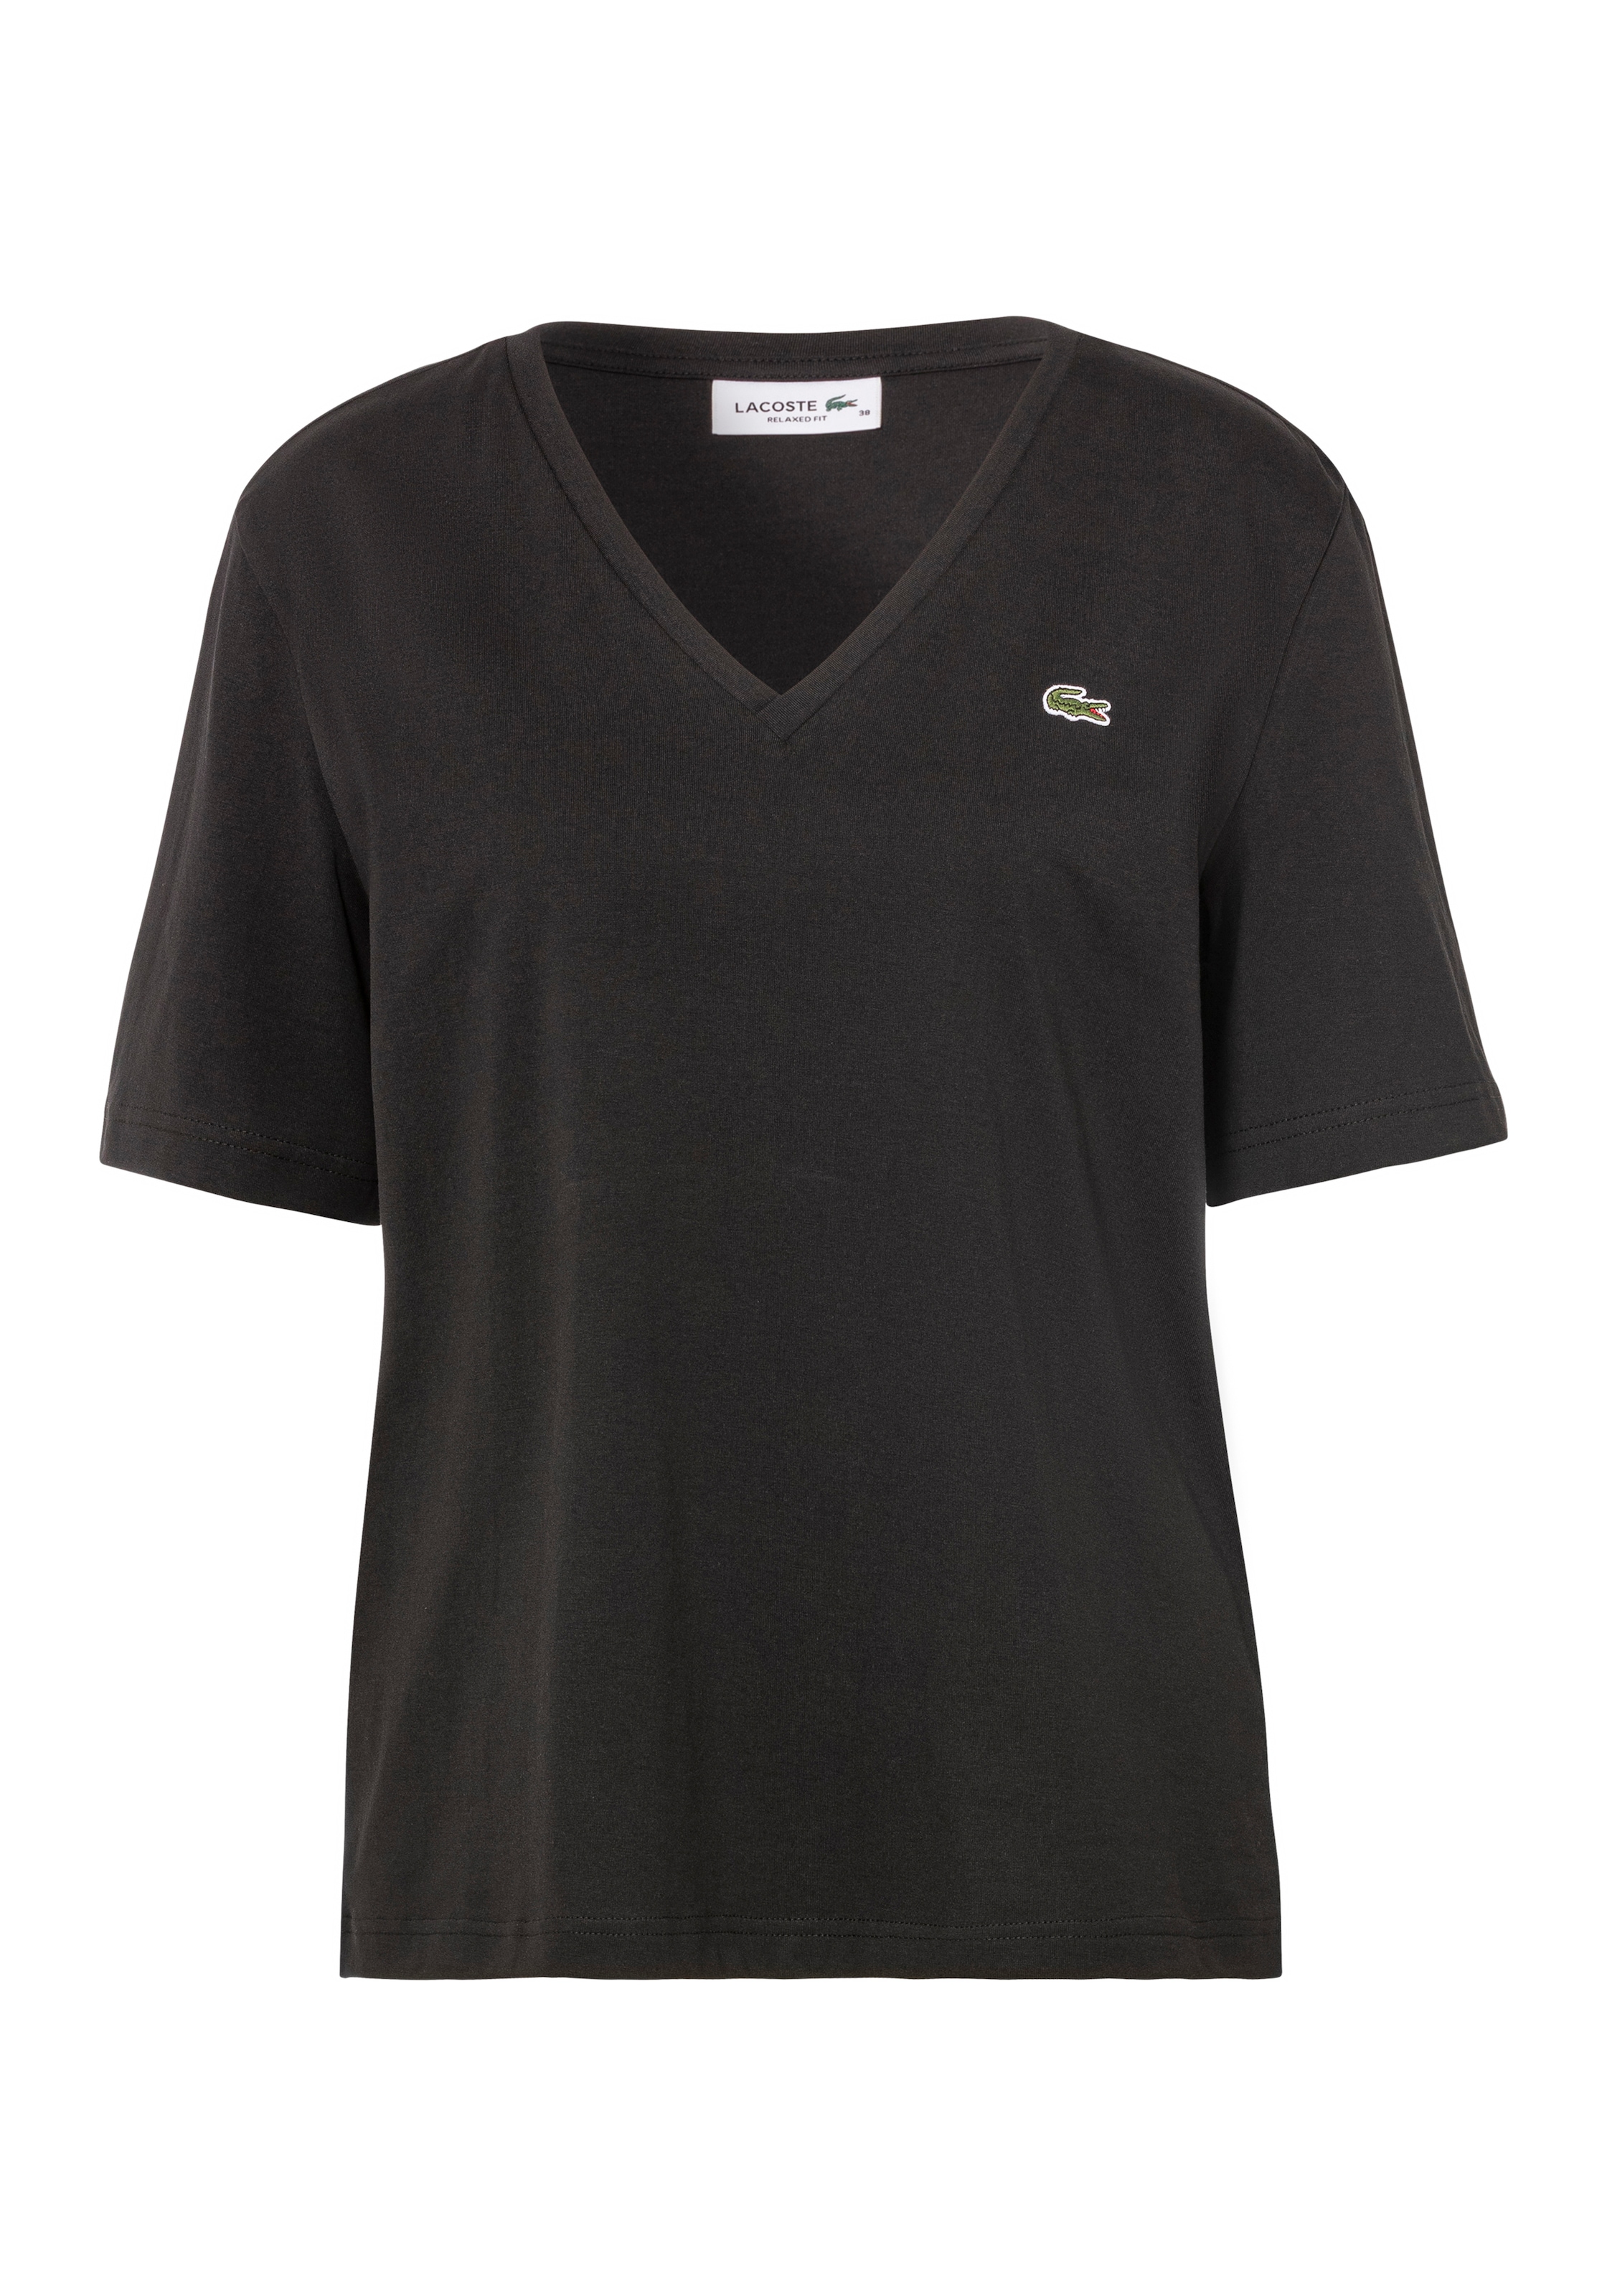 Lacoste T-Shirt, Online Shop Lacoste im OTTO der Brust mit auf Logo